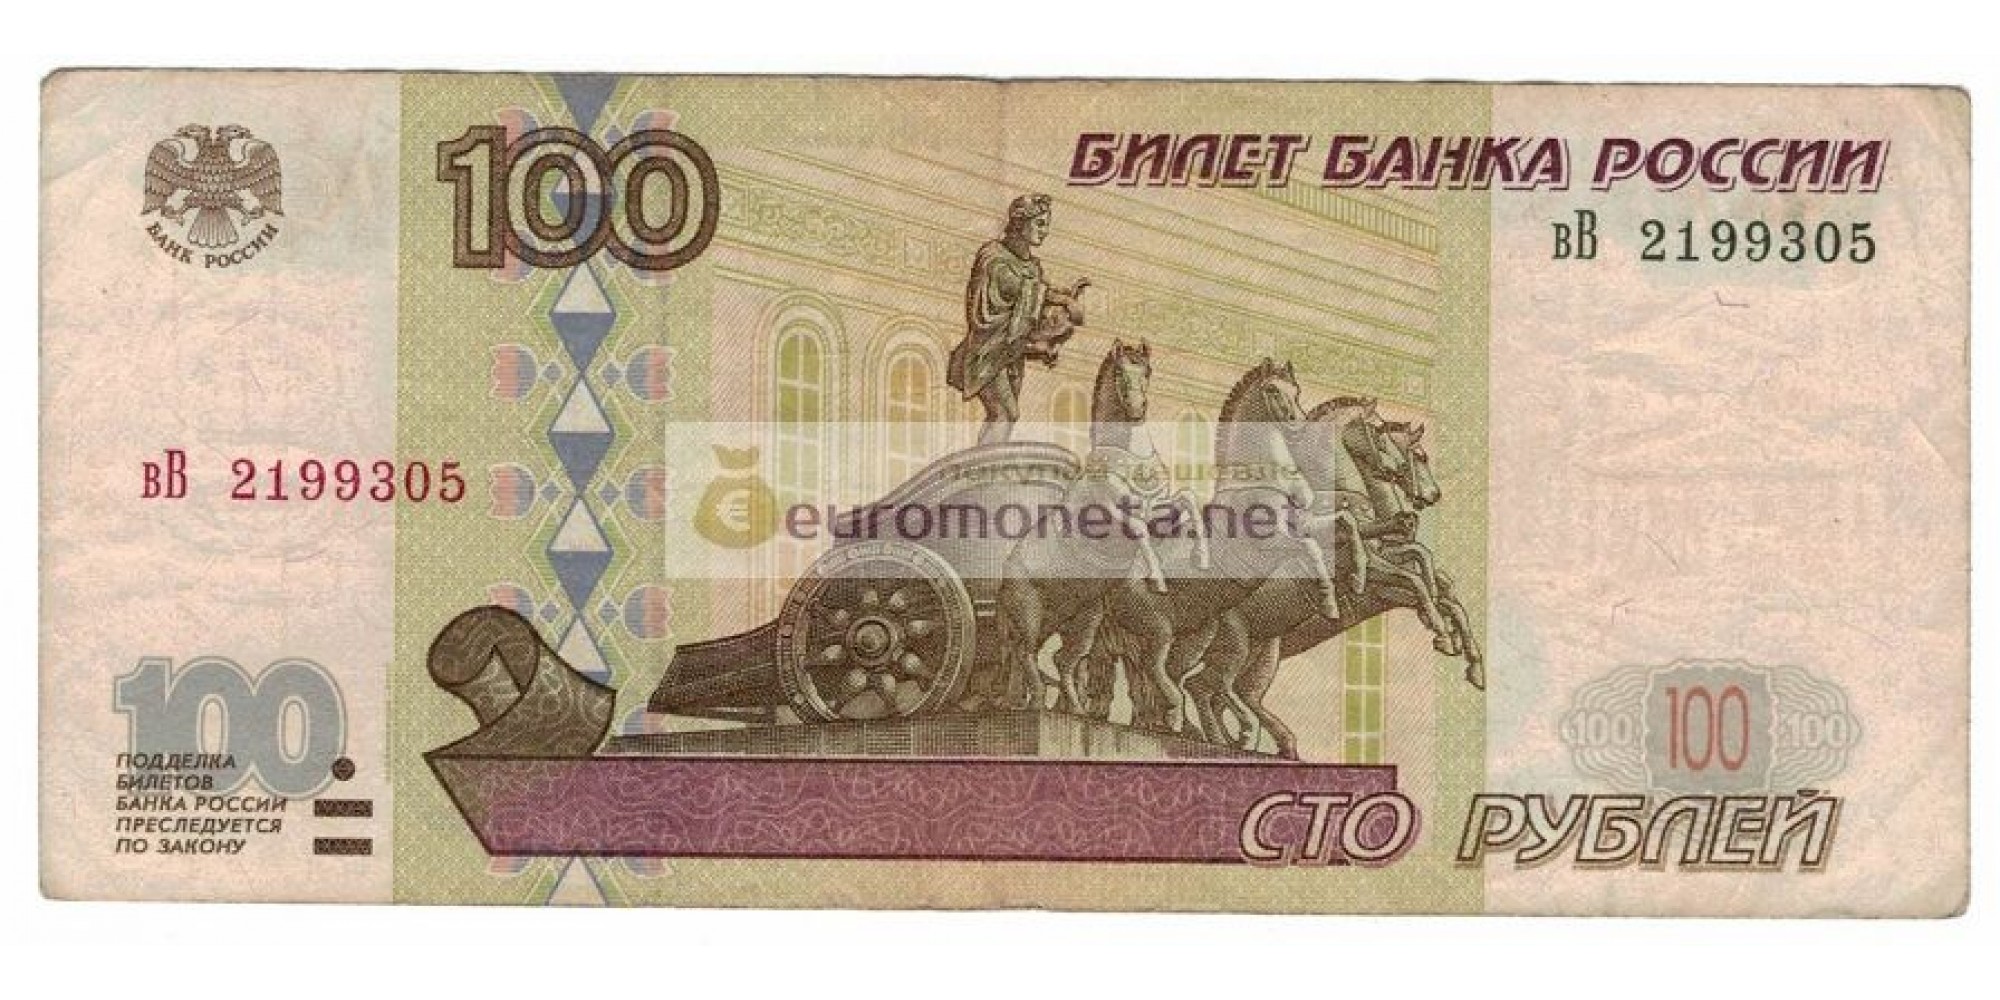 Россия 100 рублей 1997 год модификация 2001 год серия вВ 2199305